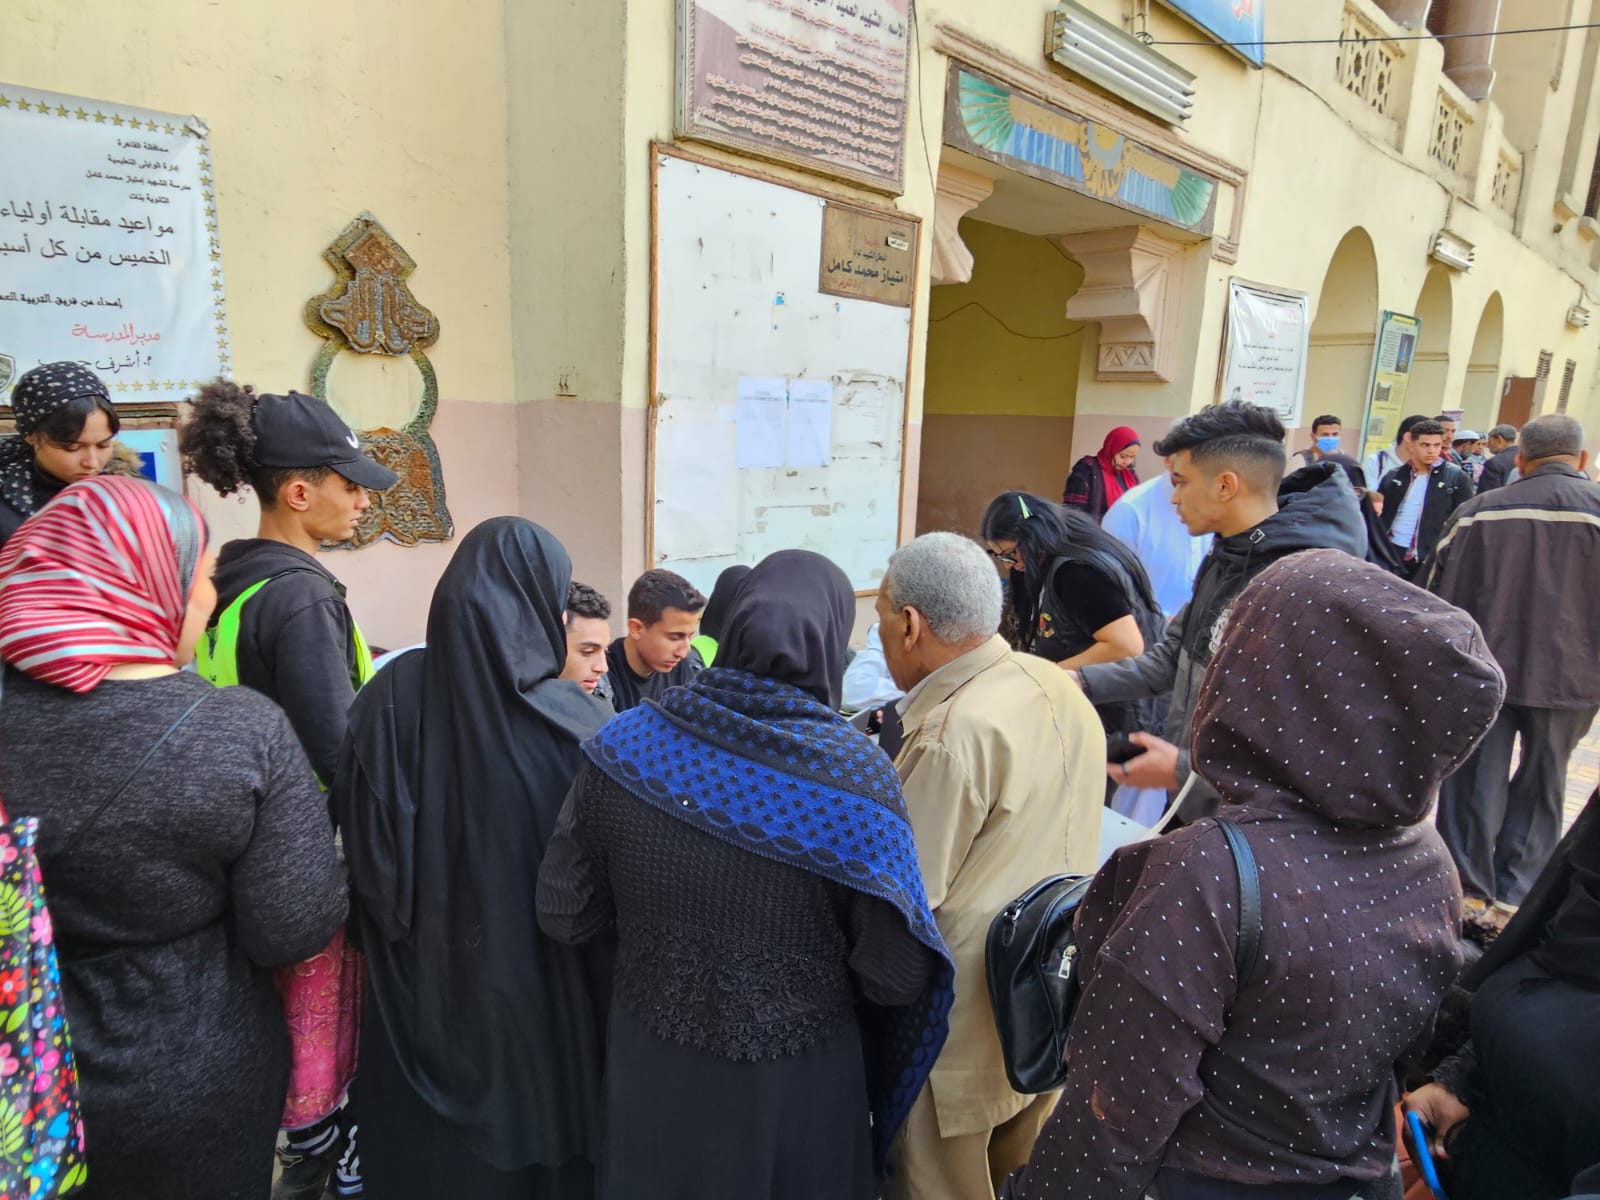 تزايد اعداد الناخبين في ثاني ايام انتخابات الرئاسة بالعباسية قبل فترة الراحة (1)